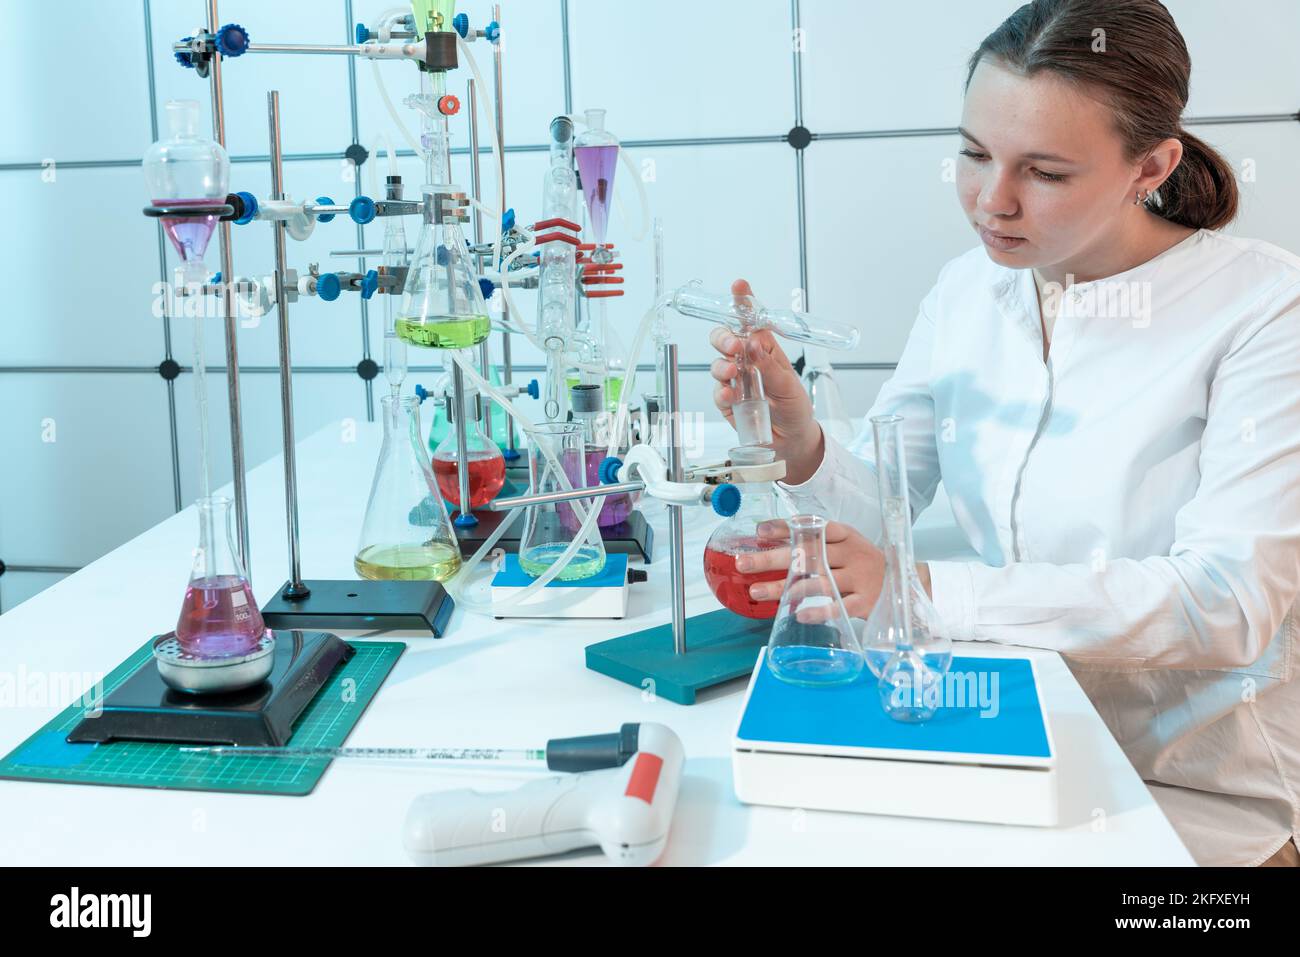 Chemisches Experiment im Labor für organische Chemie der Technischen Universität richtet eine junge Studentin einen Kolben zum Verdampfen von Flüssigkeit ein Stockfoto